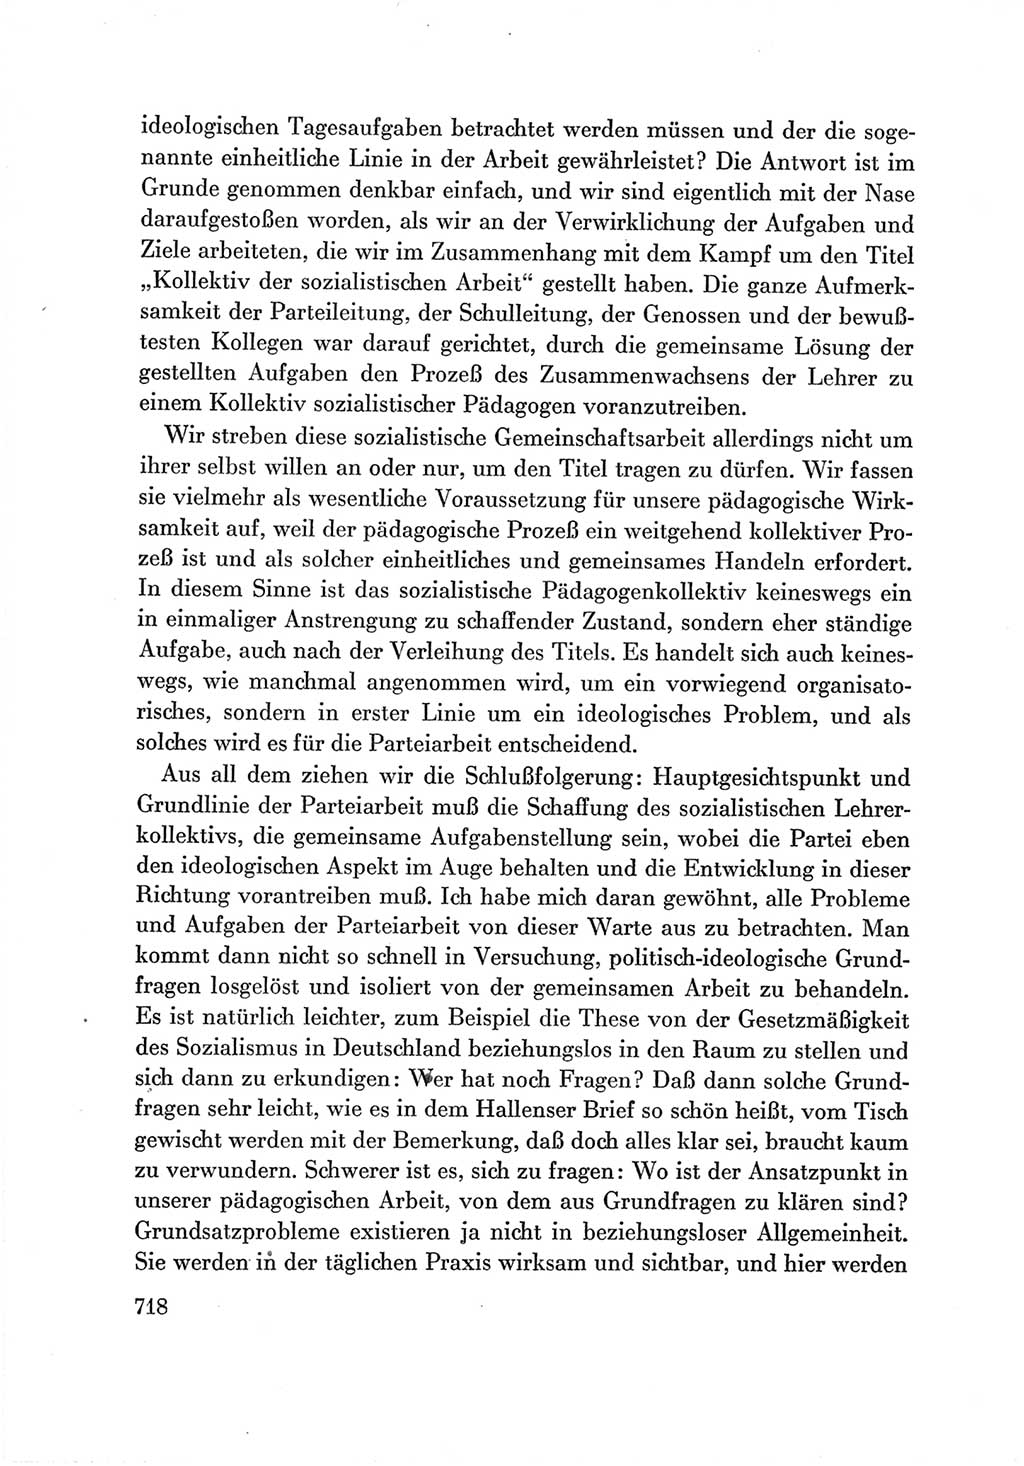 Protokoll der Verhandlungen des Ⅶ. Parteitages der Sozialistischen Einheitspartei Deutschlands (SED) [Deutsche Demokratische Republik (DDR)] 1967, Band Ⅲ, Seite 718 (Prot. Verh. Ⅶ. PT SED DDR 1967, Bd. Ⅲ, S. 718)